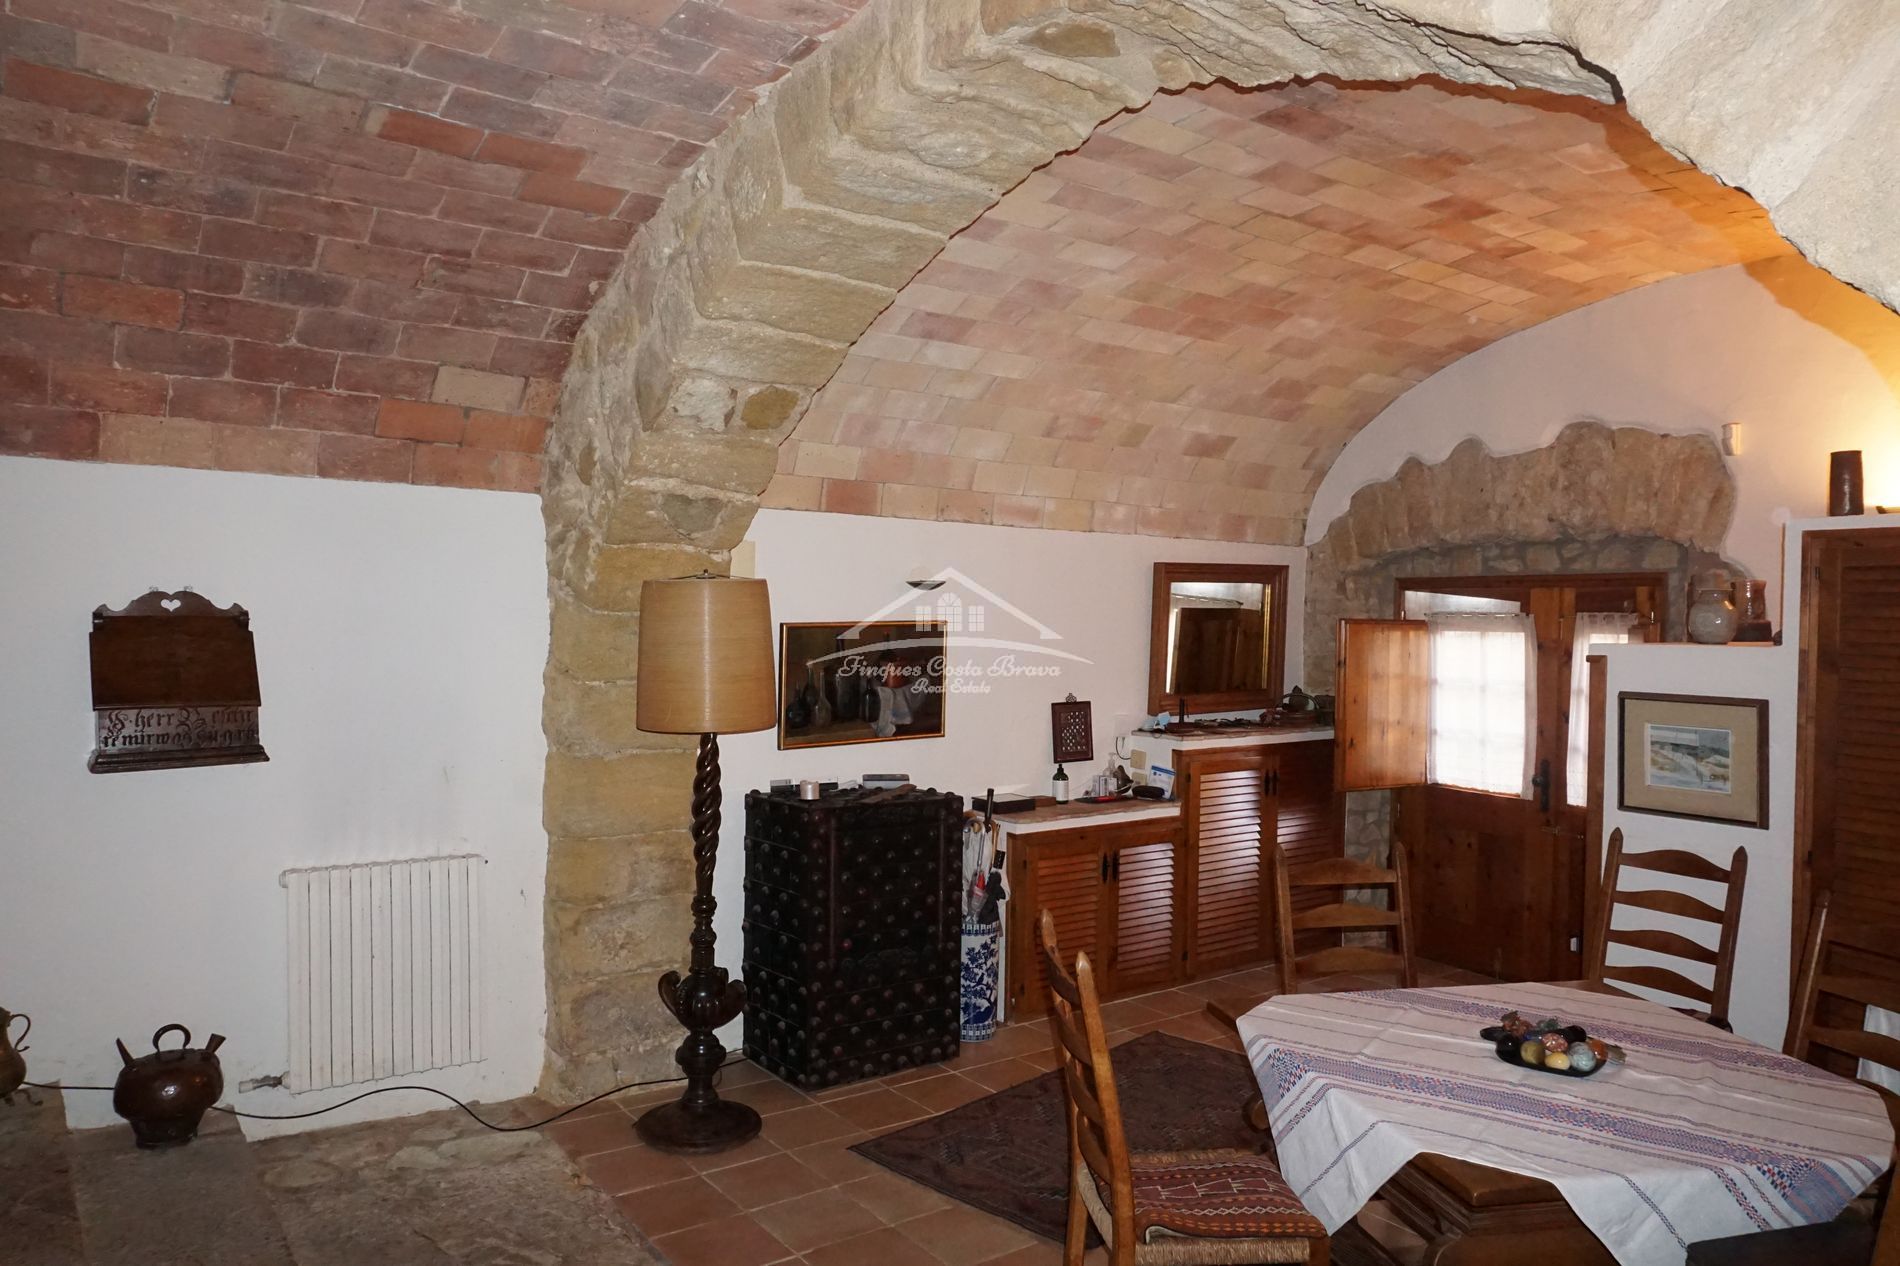 Casa de pueblo restaurada en venta, situada en pleno casco antiguio del pueblo medieval de Pals.n